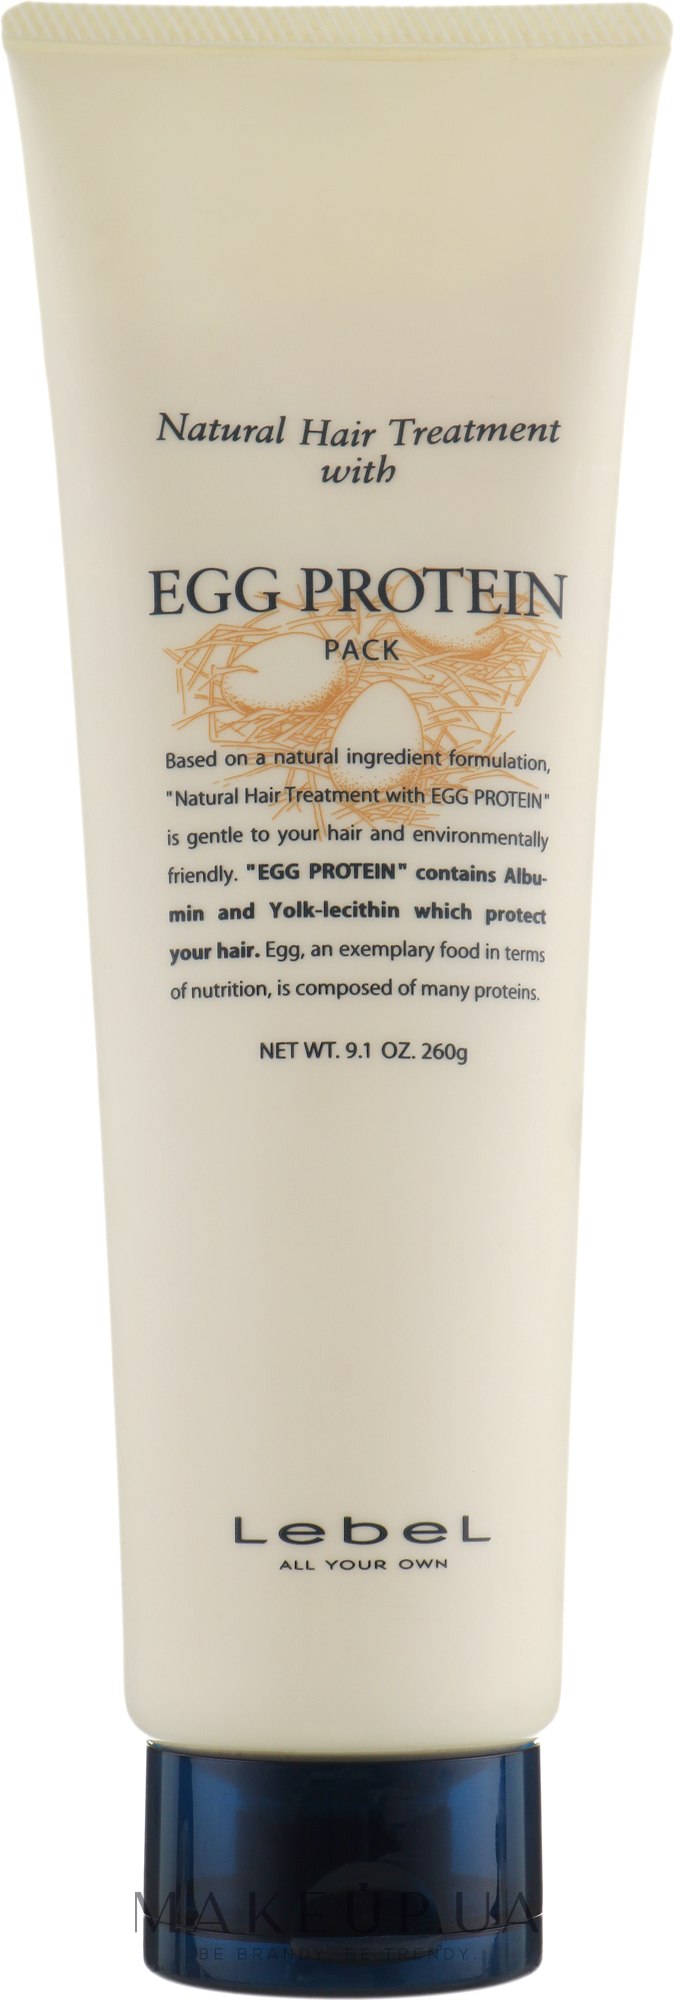 Питательная маска для поврежденных волос - Lebel Egg Protein Hair Mask — фото 260g